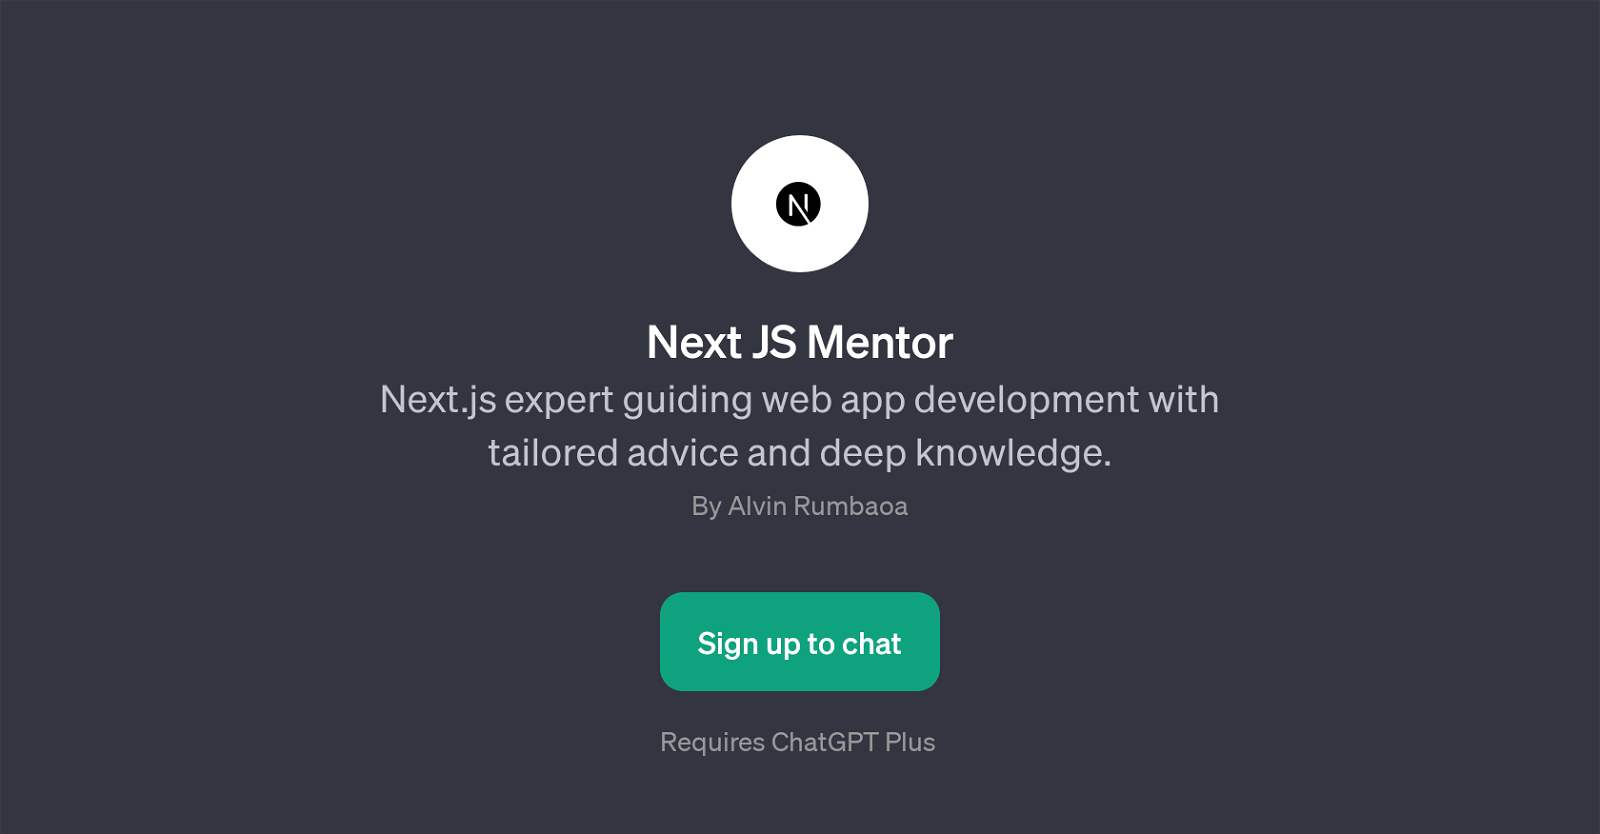 Next JS Mentor website